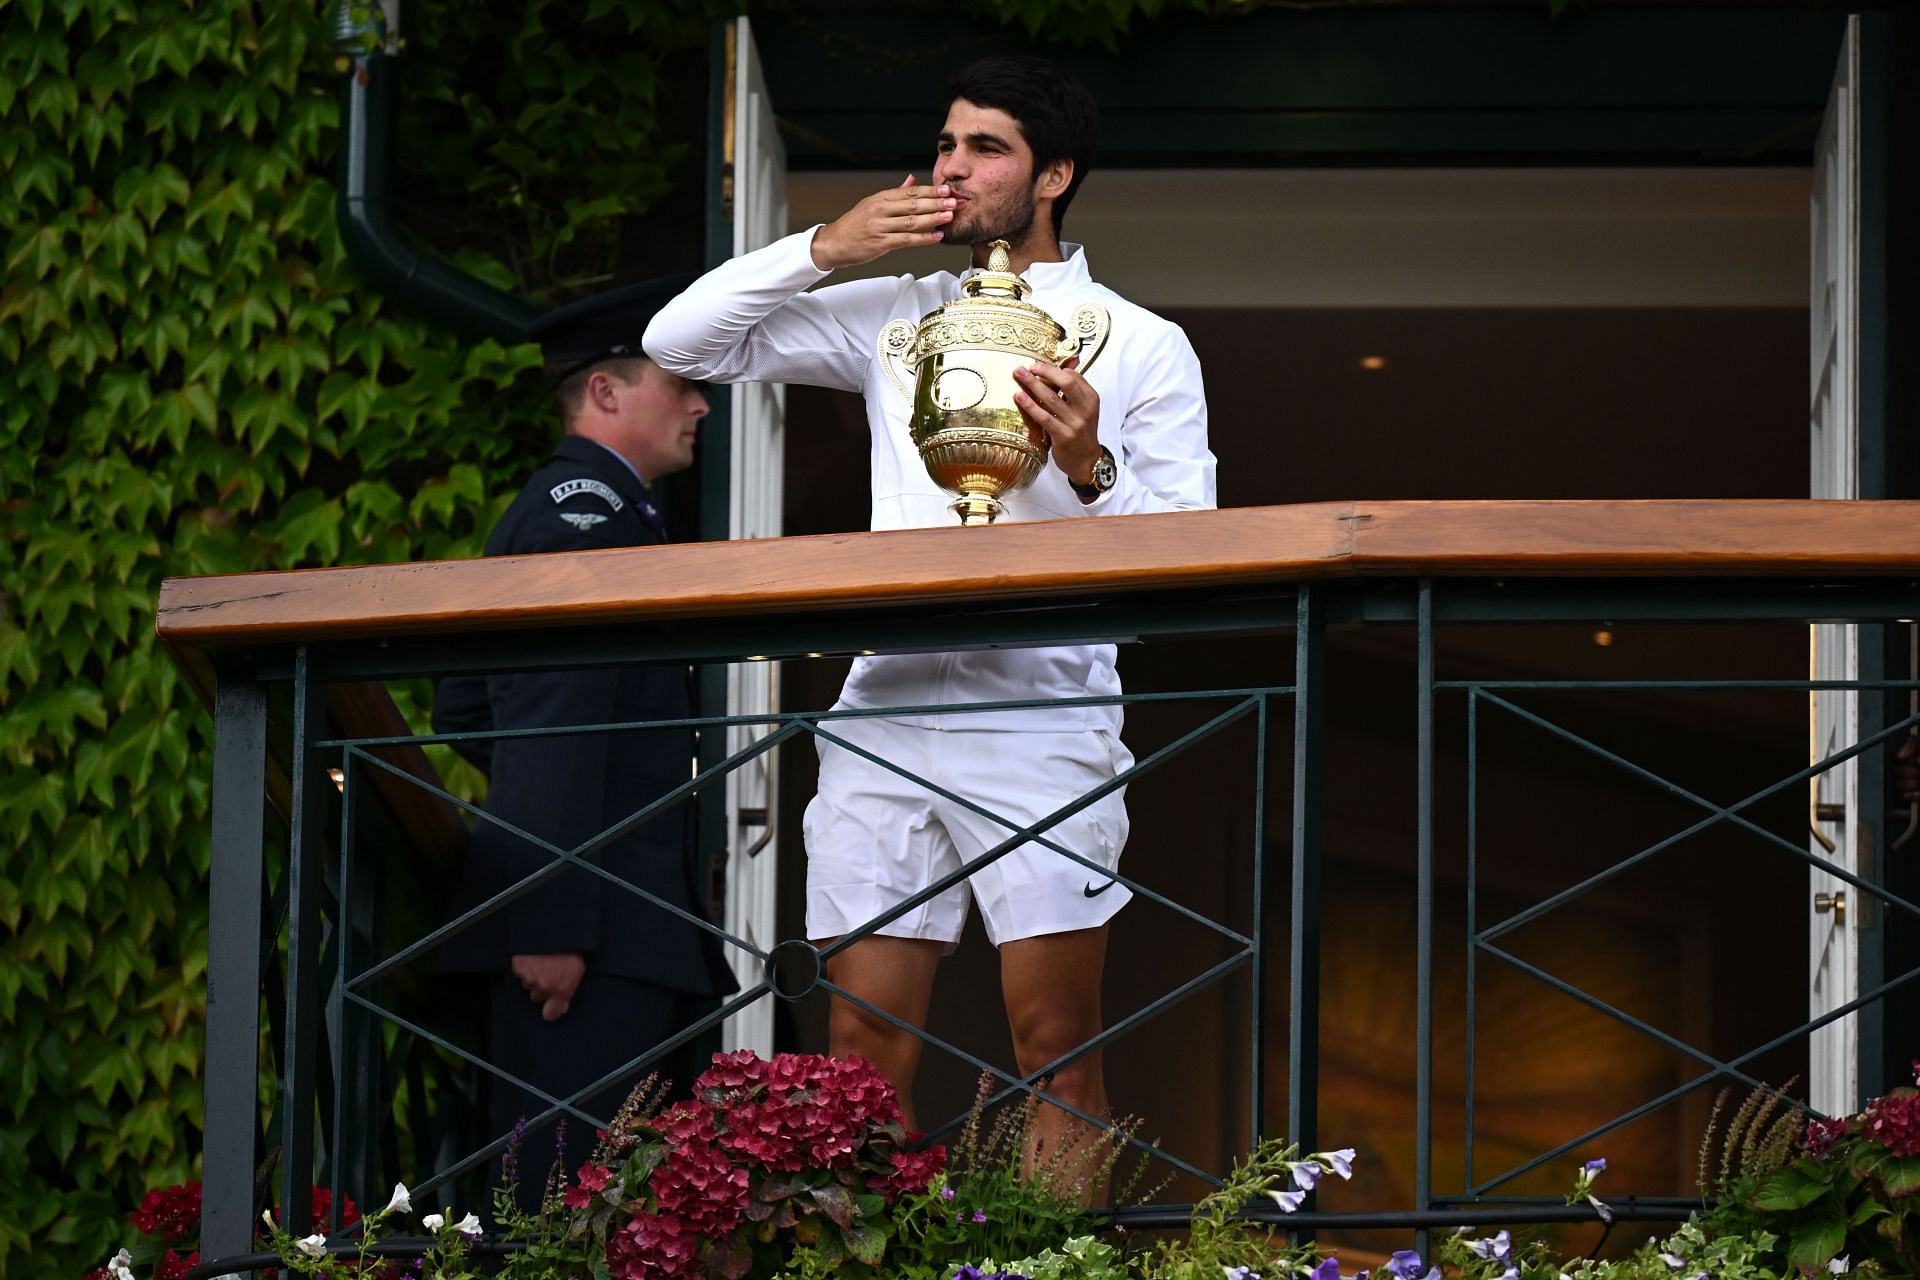 Alcaraz won Wimbledon.